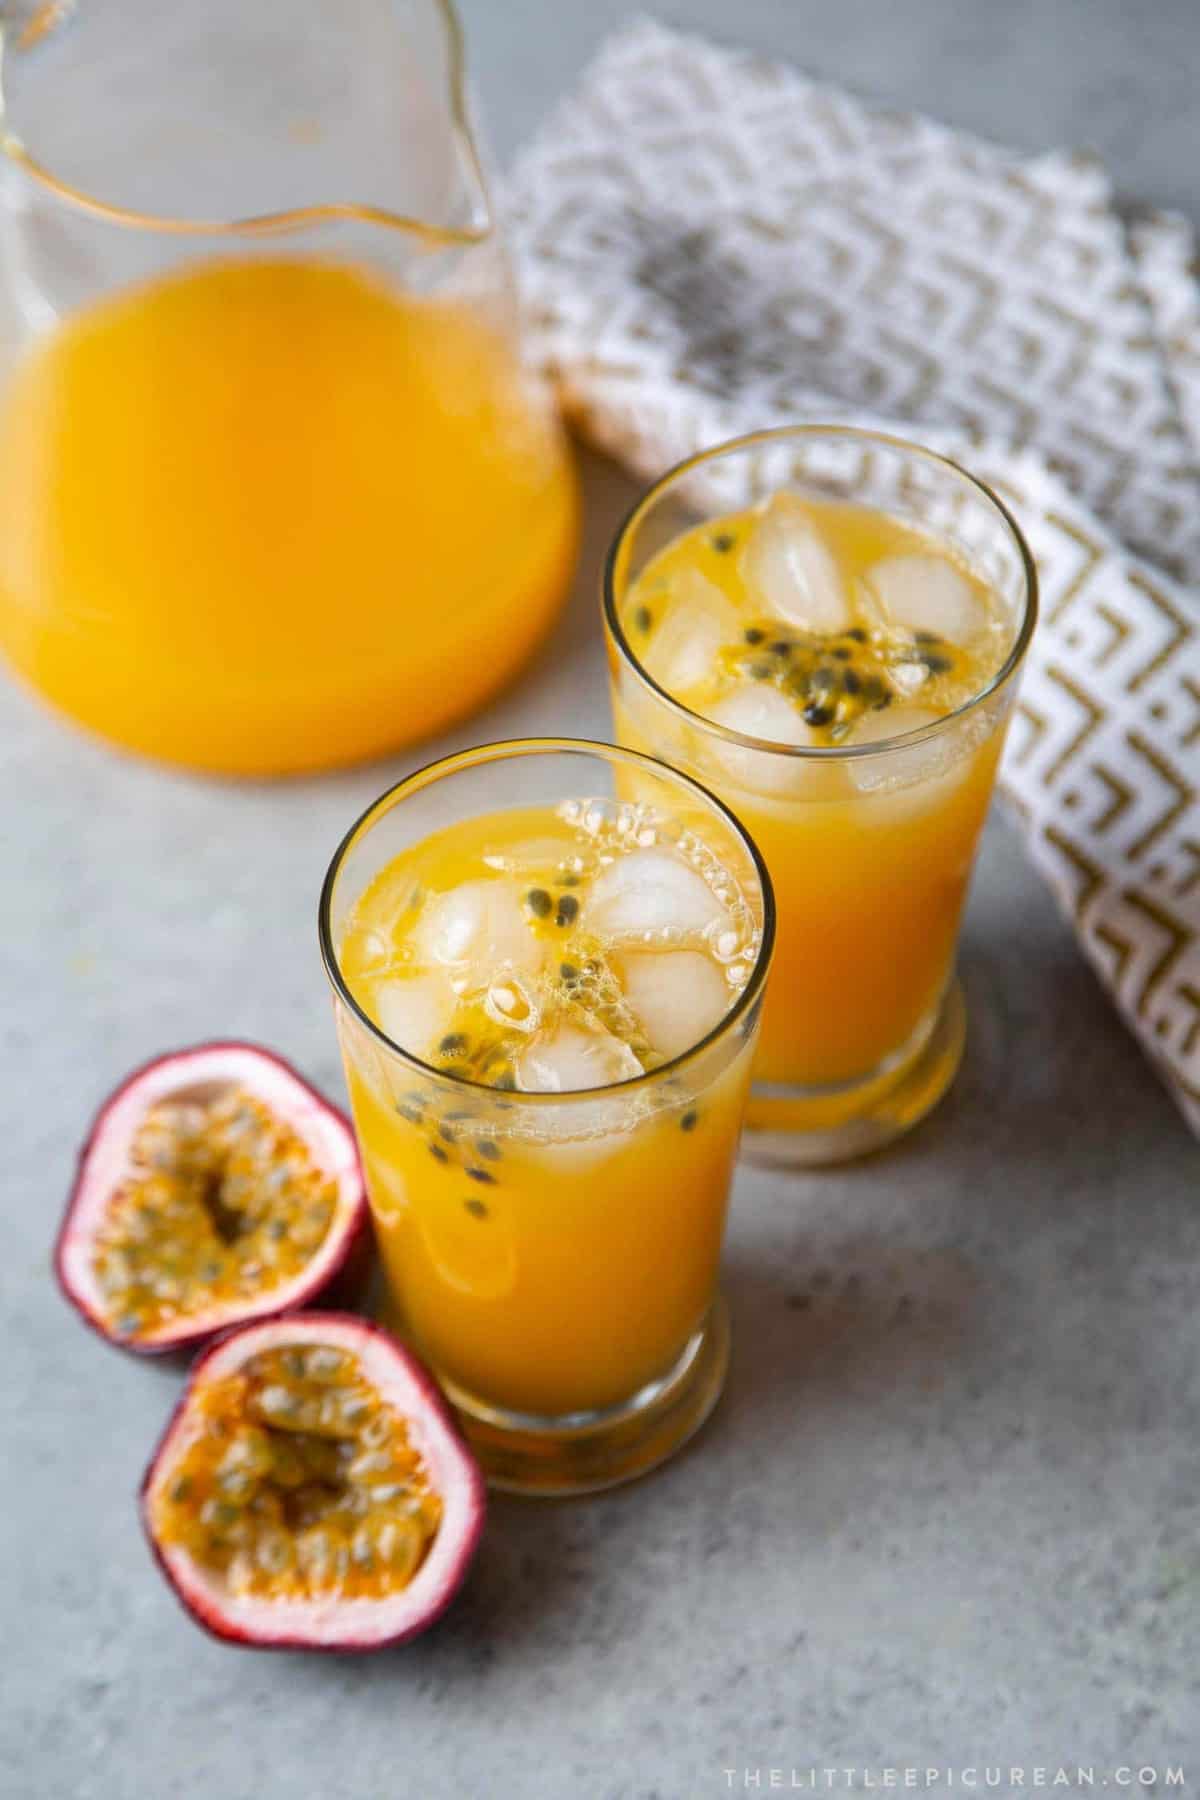 https://www.thelittleepicurean.com/wp-content/uploads/2021/03/passionfruit-juice-1.jpg